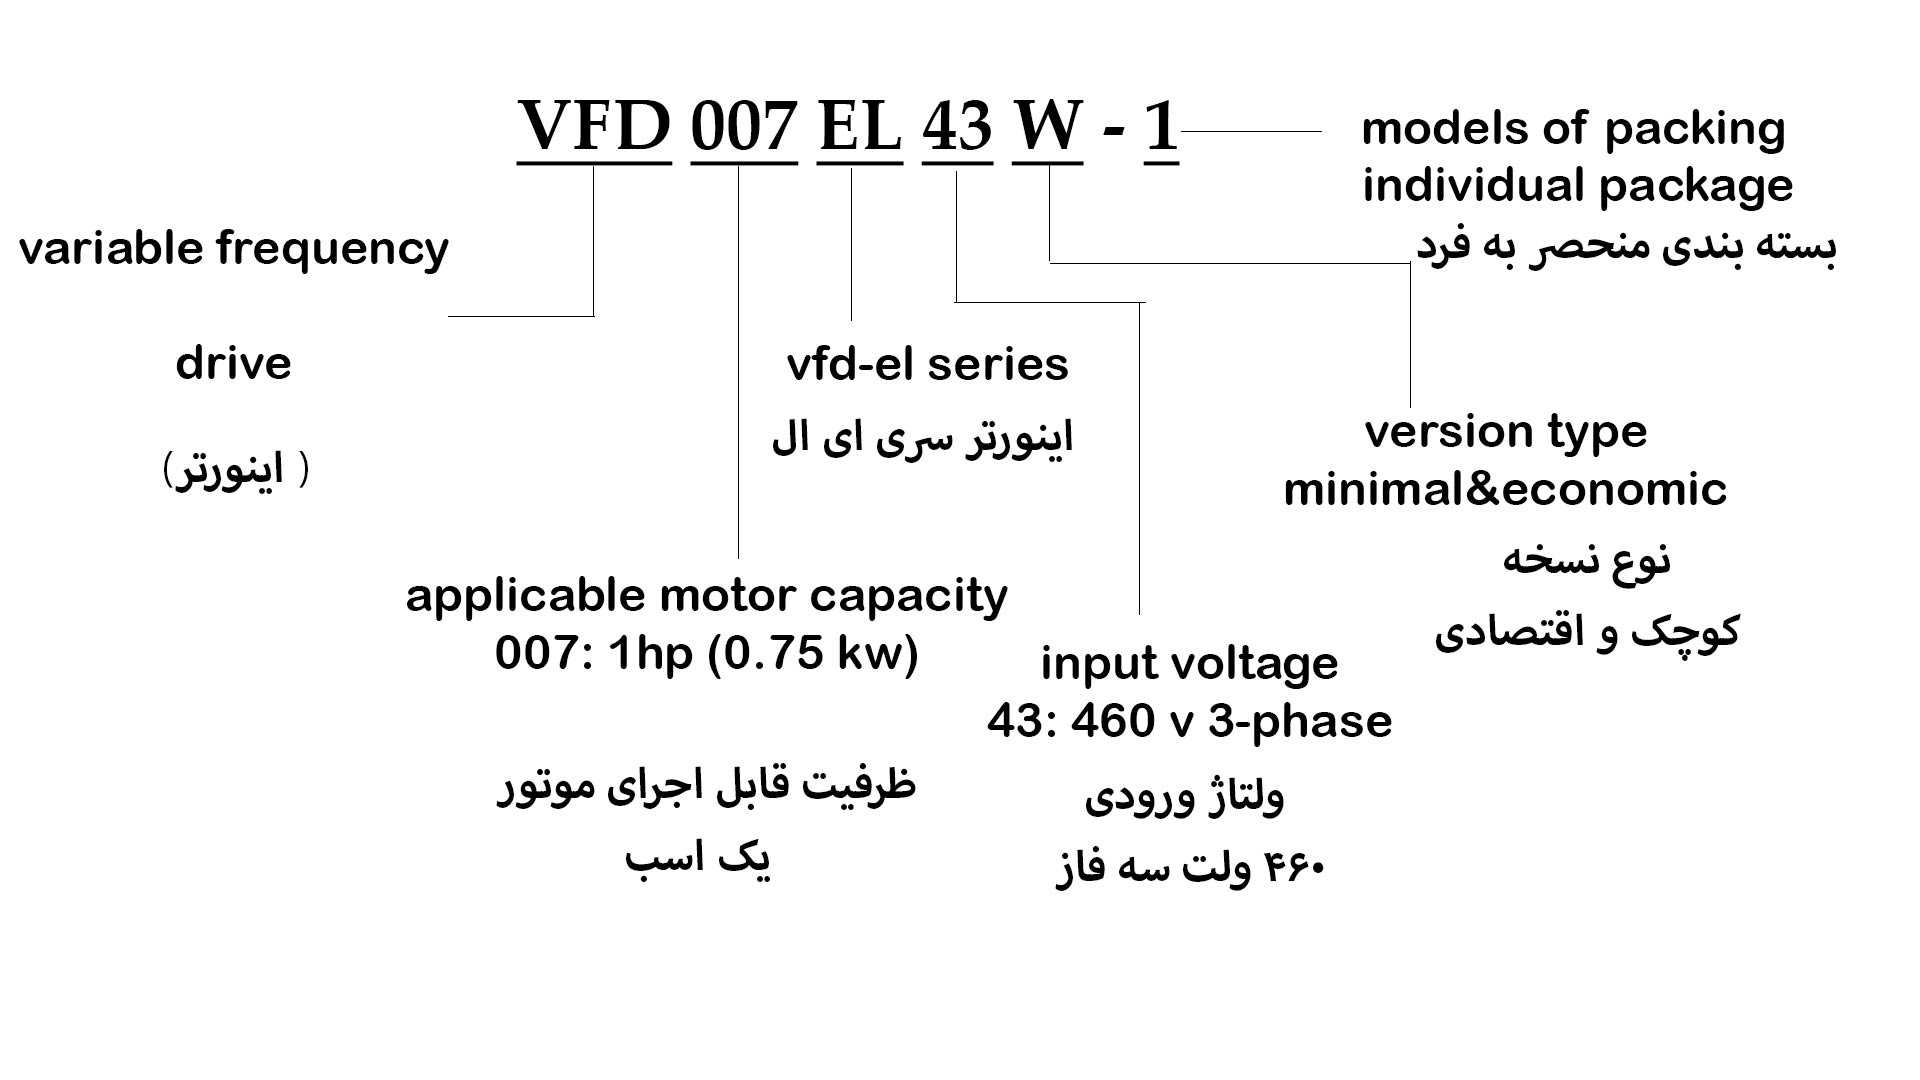 VFD007EL43W-1 INF